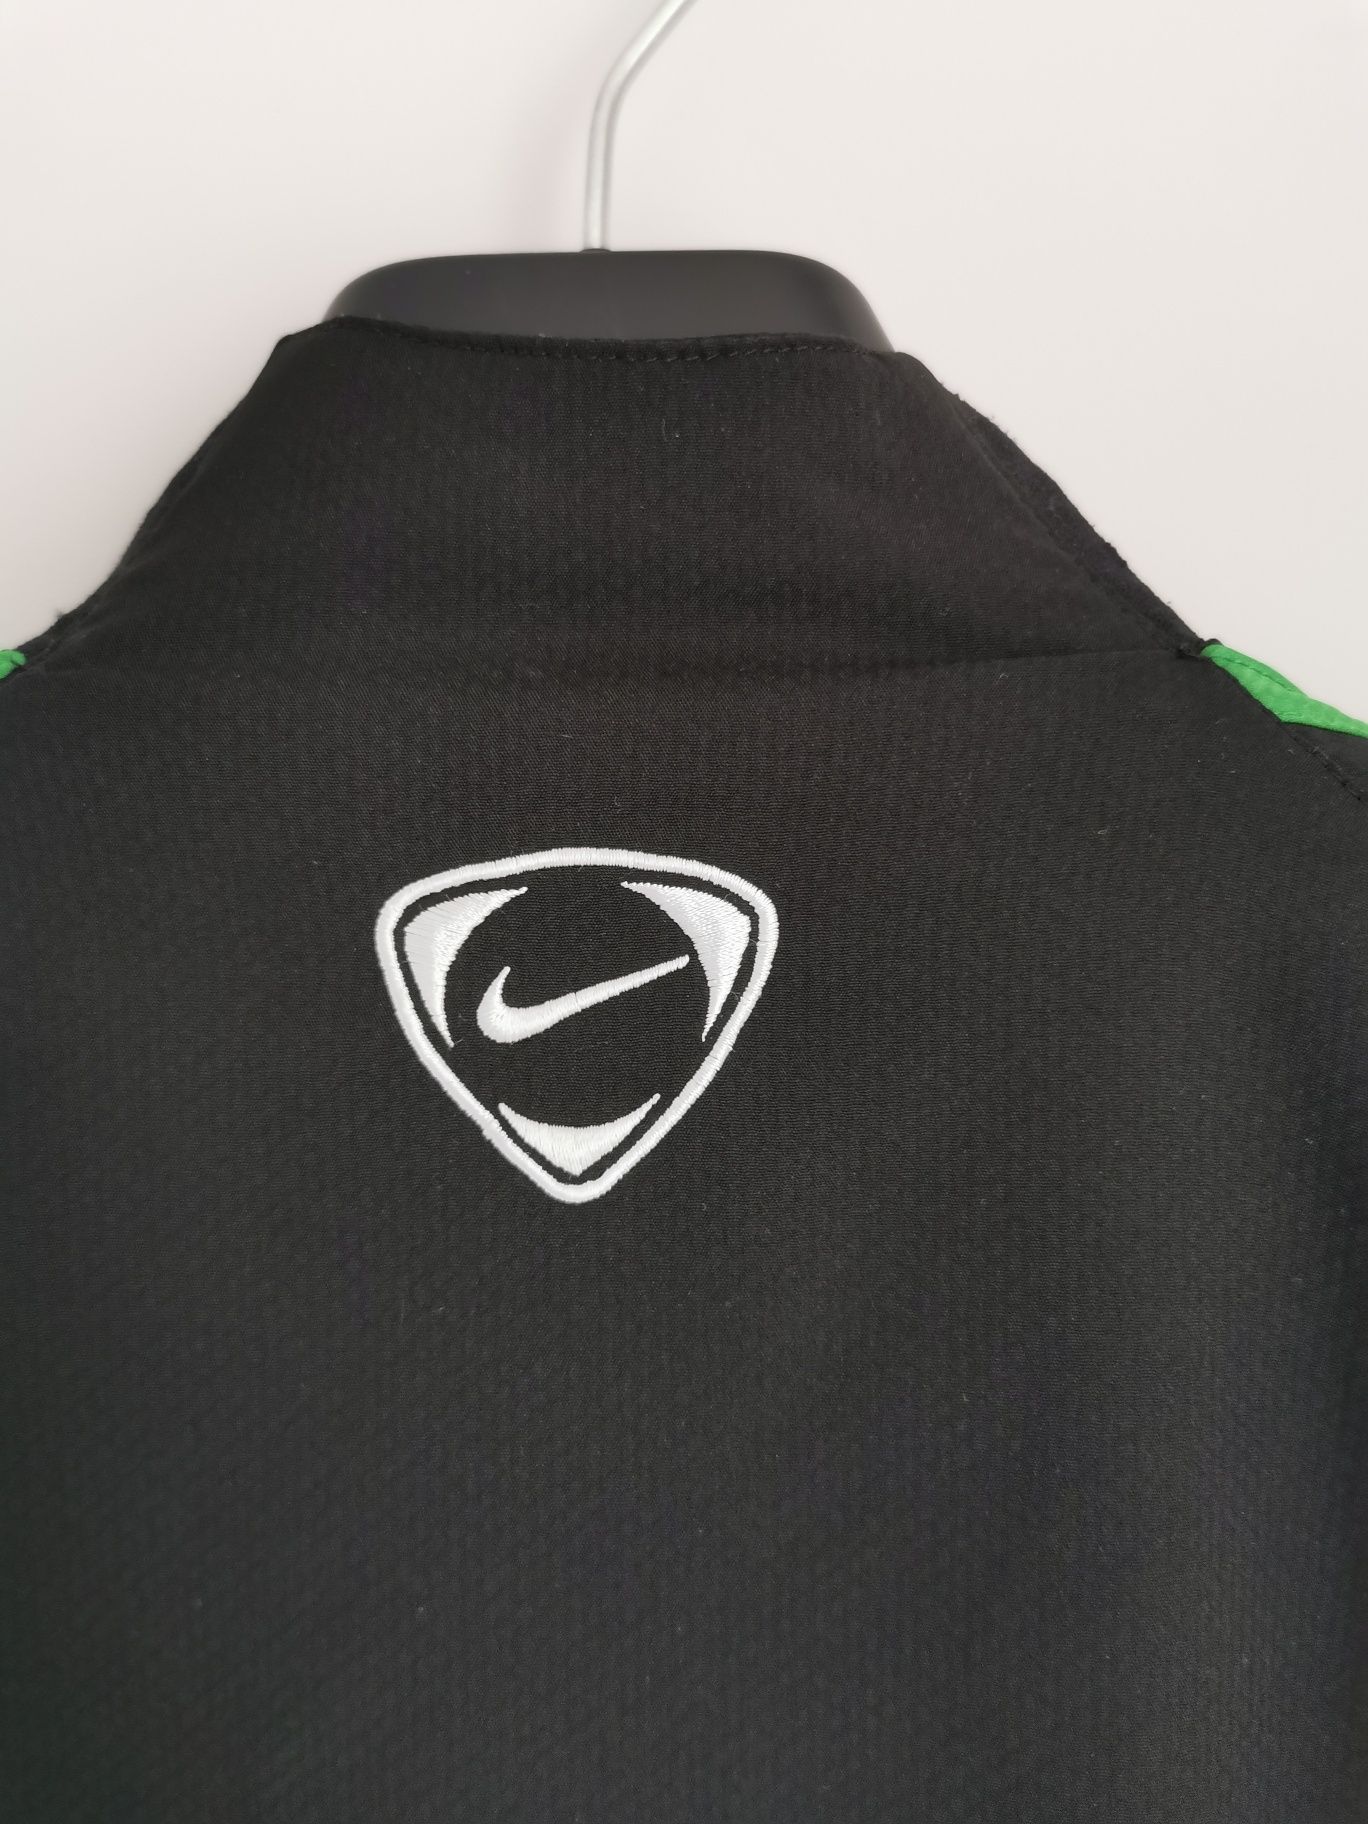 Bluza kurtka piłkarska Nike Celtic Glasgow Carling wymiarowe S